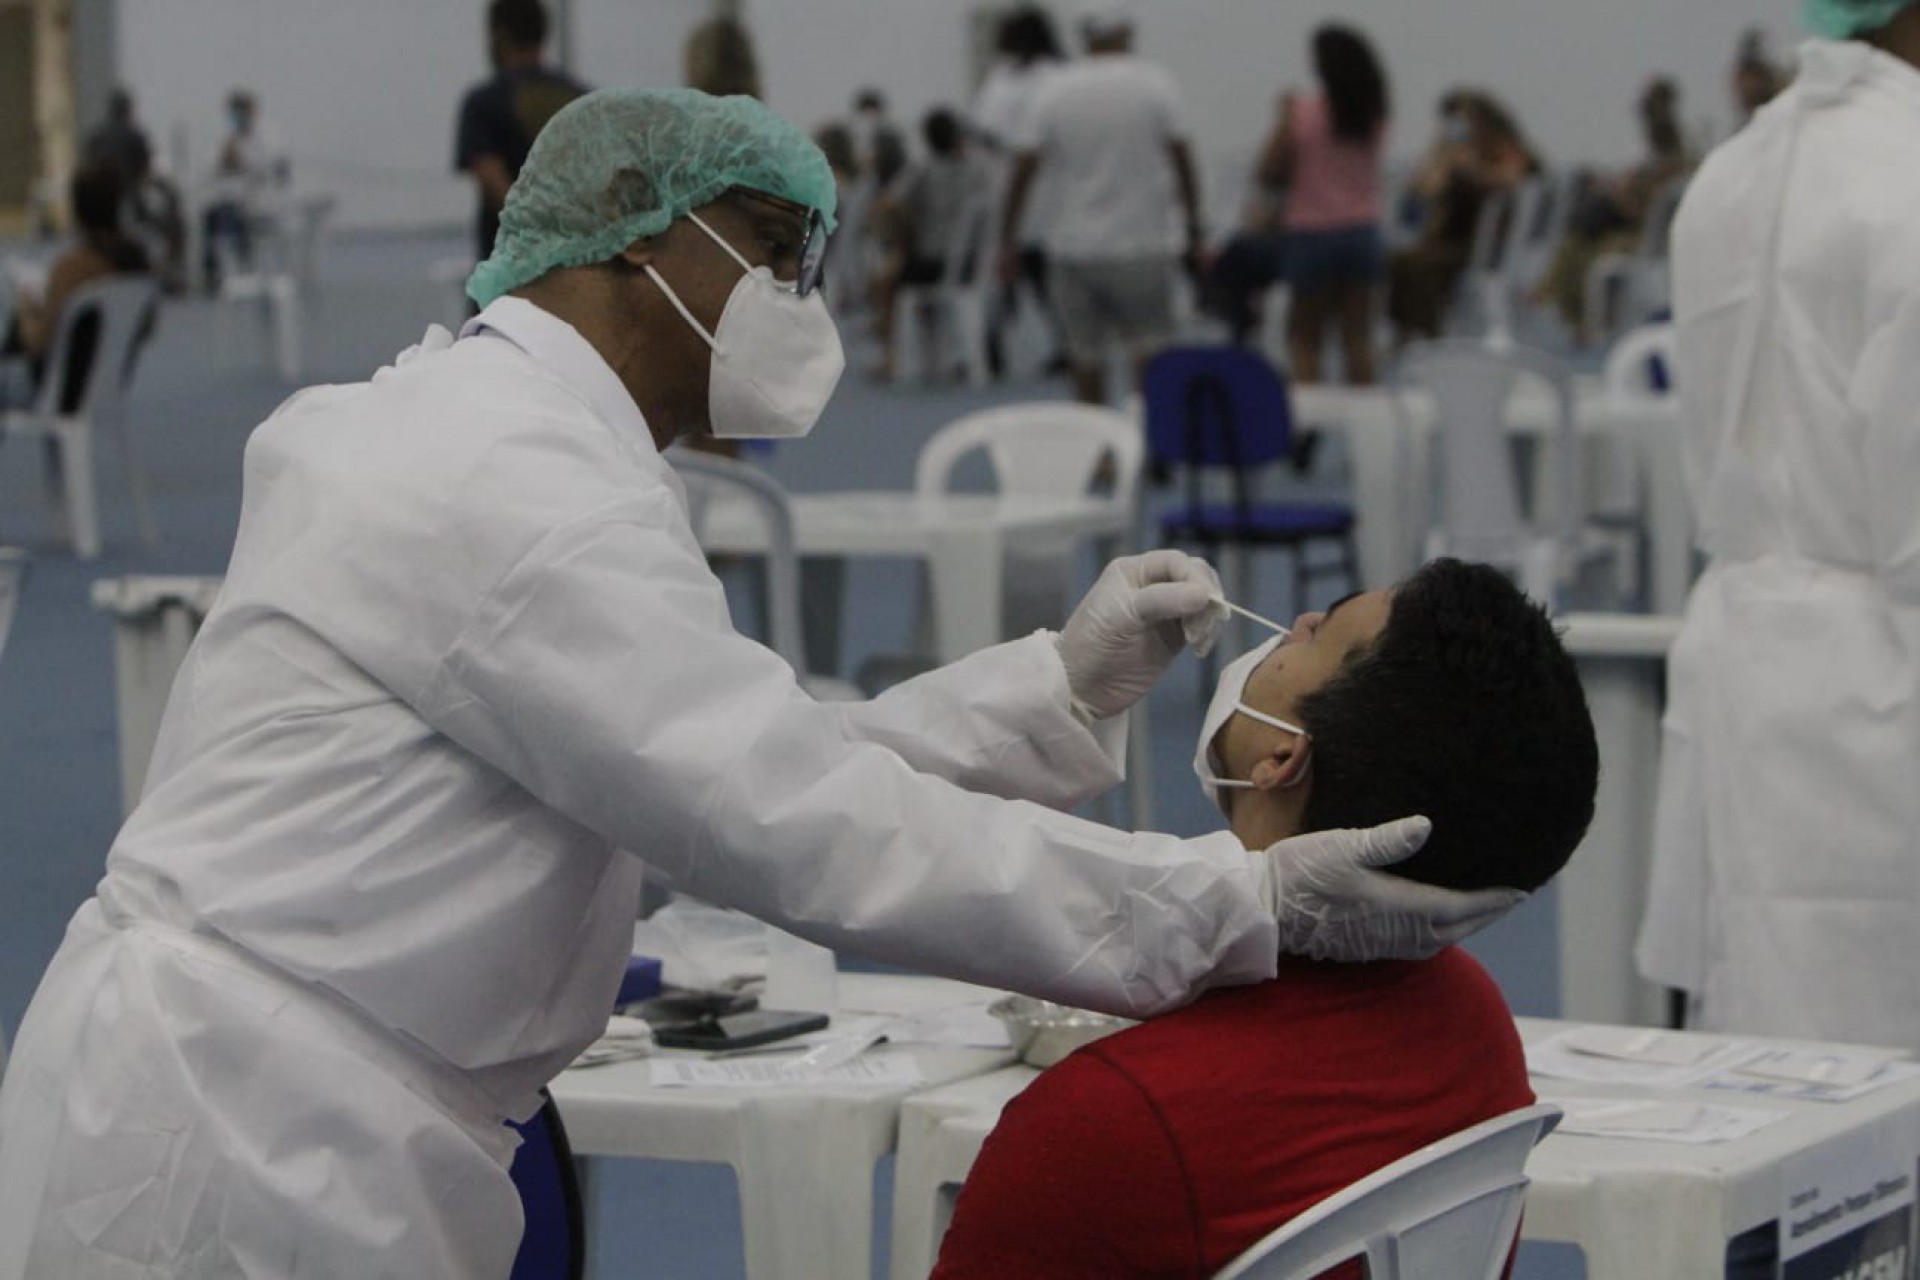 Postos vão realizar testagem para o novo coronavírus, conforme indicação médica - Marcos Porto/Agência O Dia